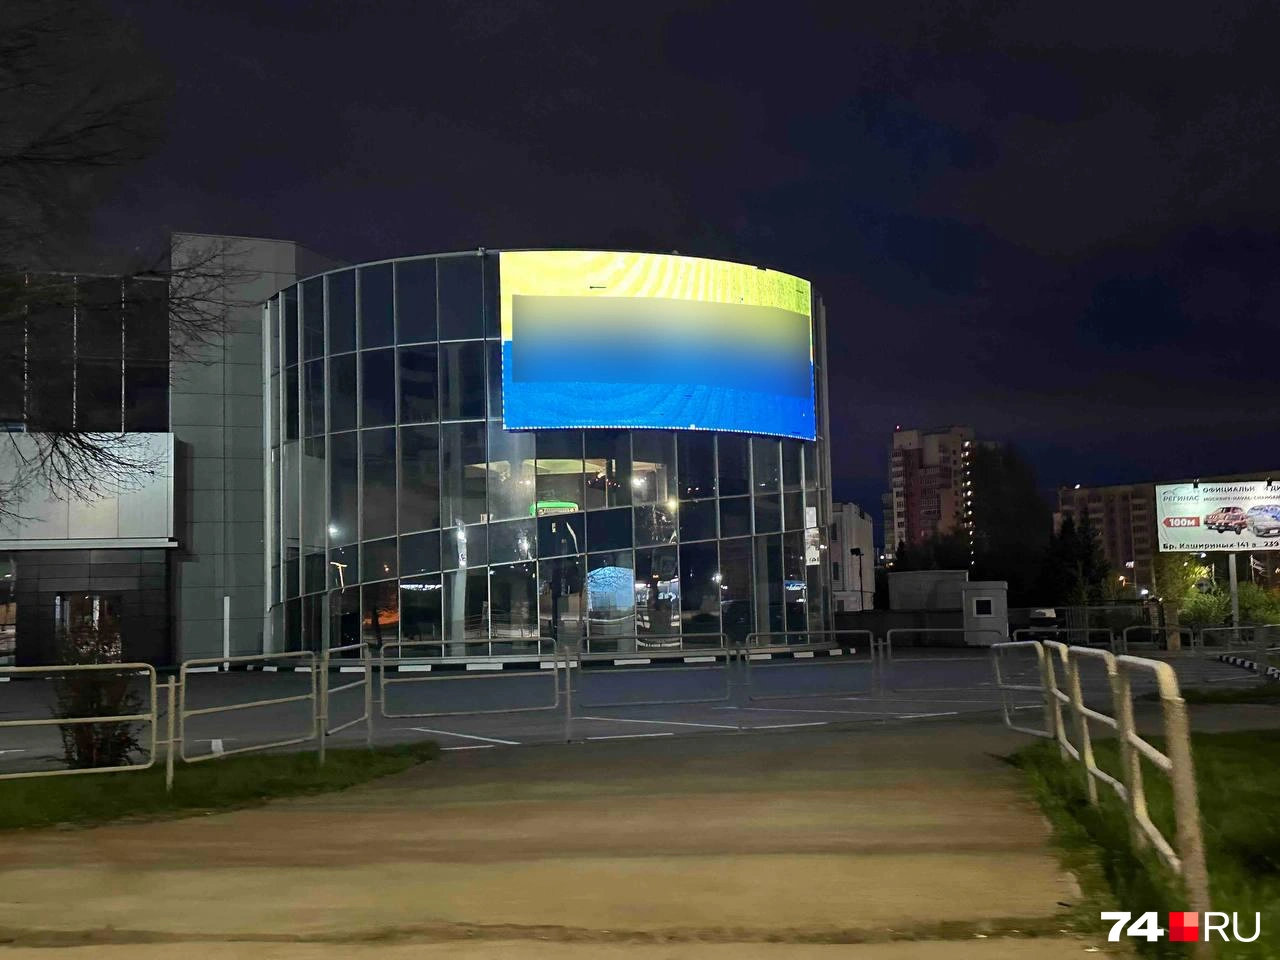 «Это что вообще?!» На здании автосалона в Челябинске появились желто-синий флаг и проукраинский лозунг